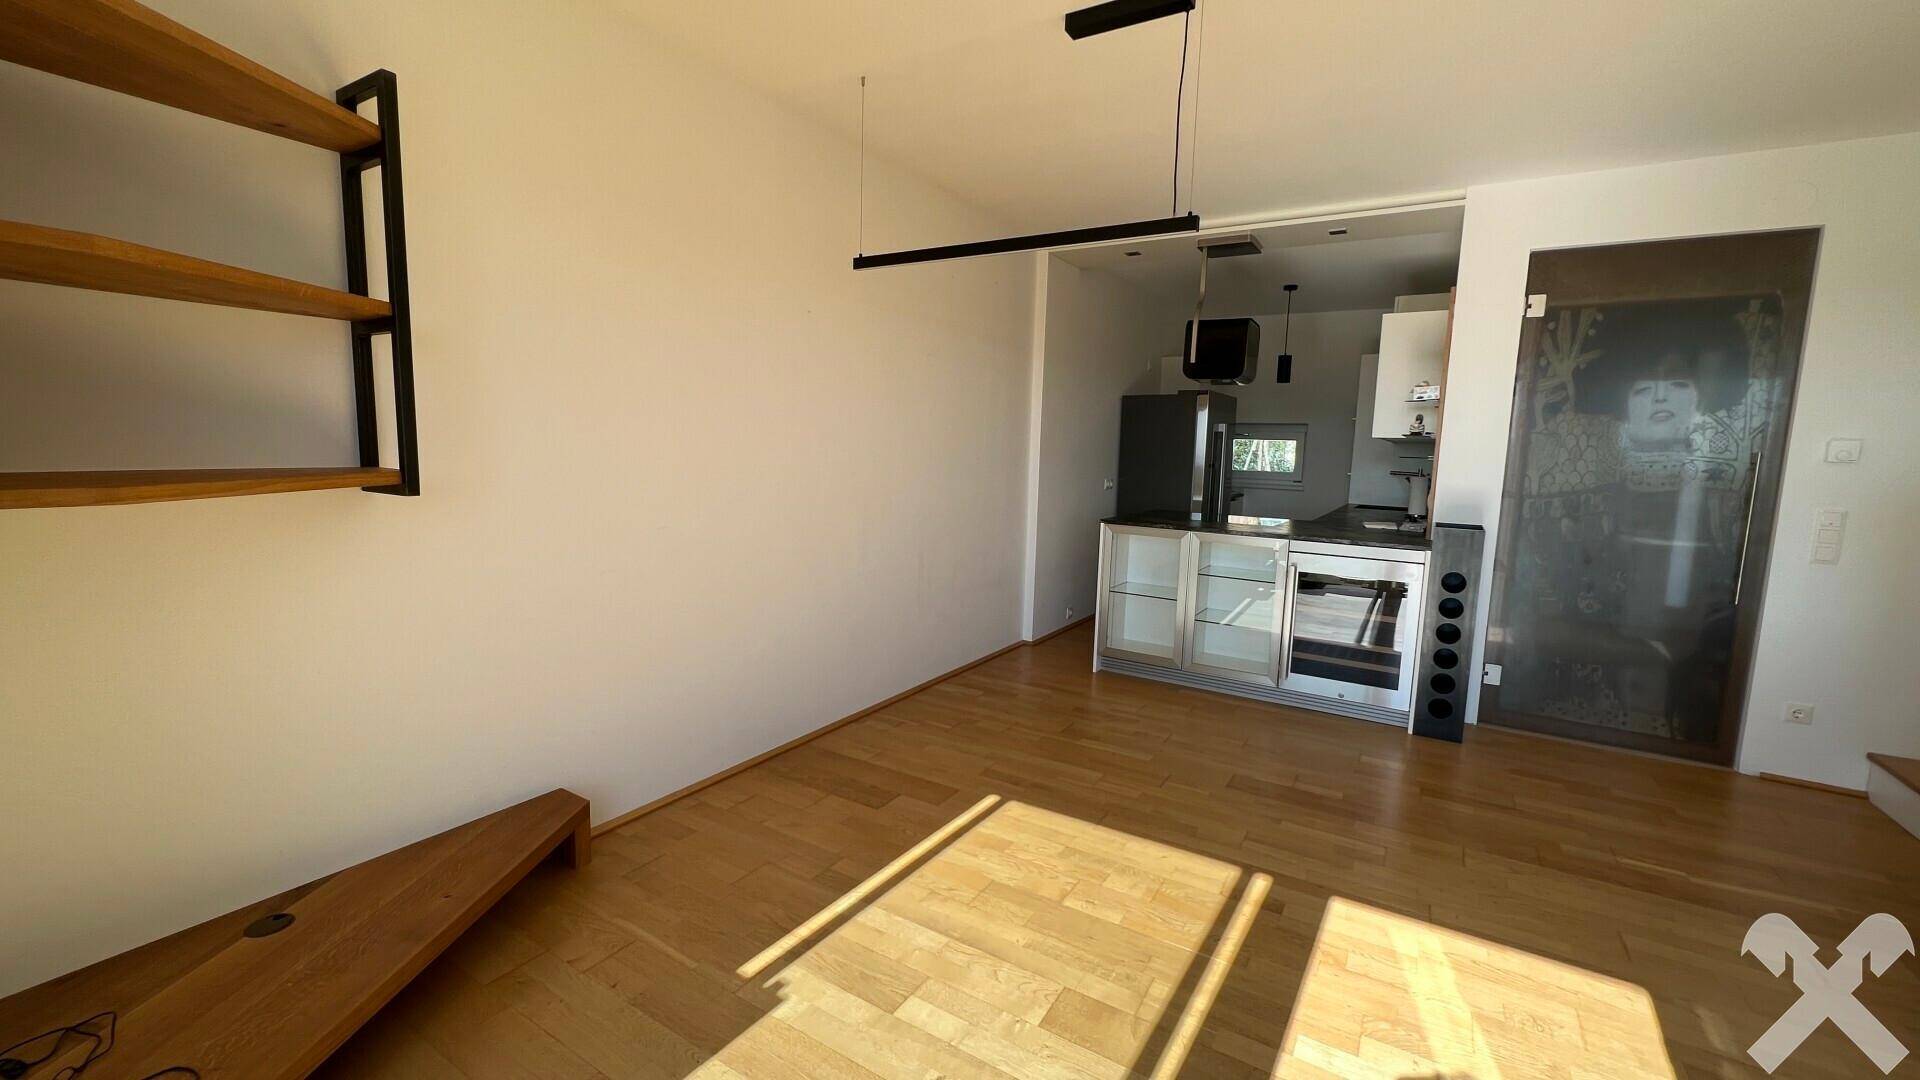 Wohnzimmer mit integrierter Küche